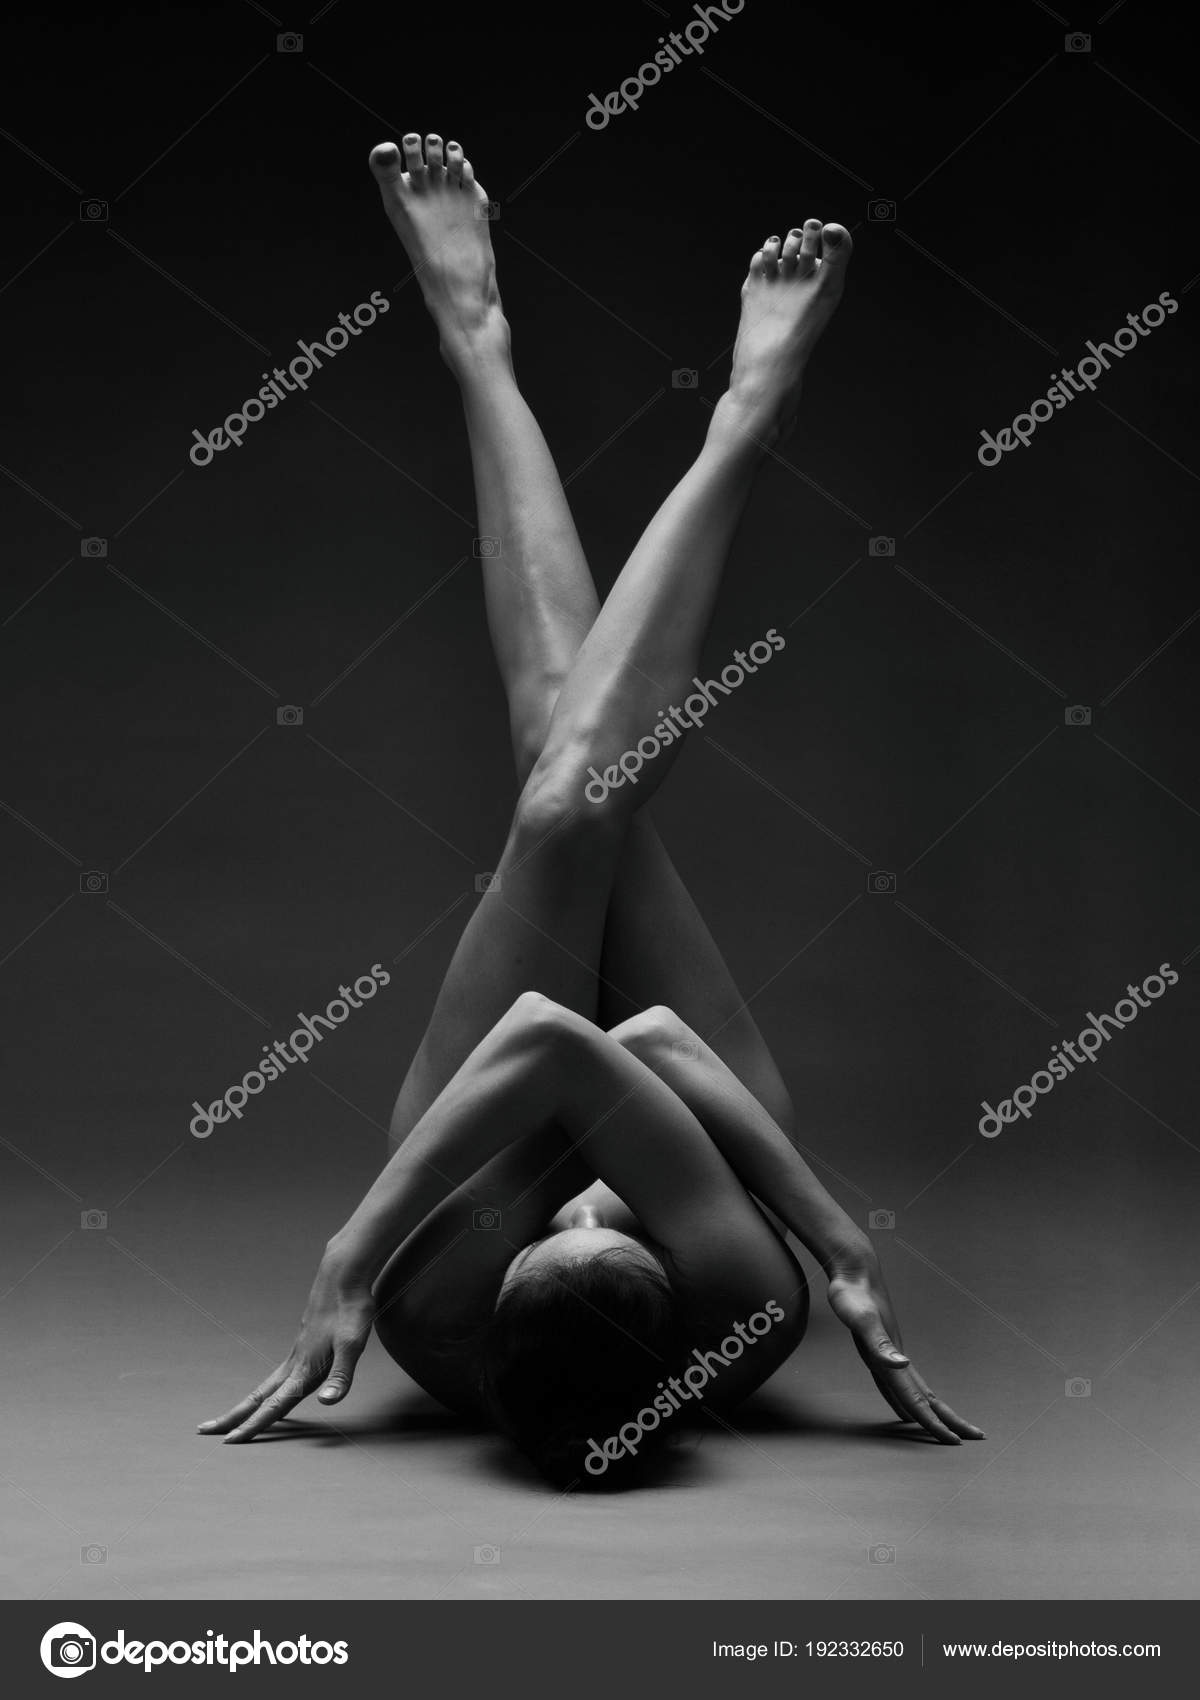 bella joseph reccomend black women nude yoga pic